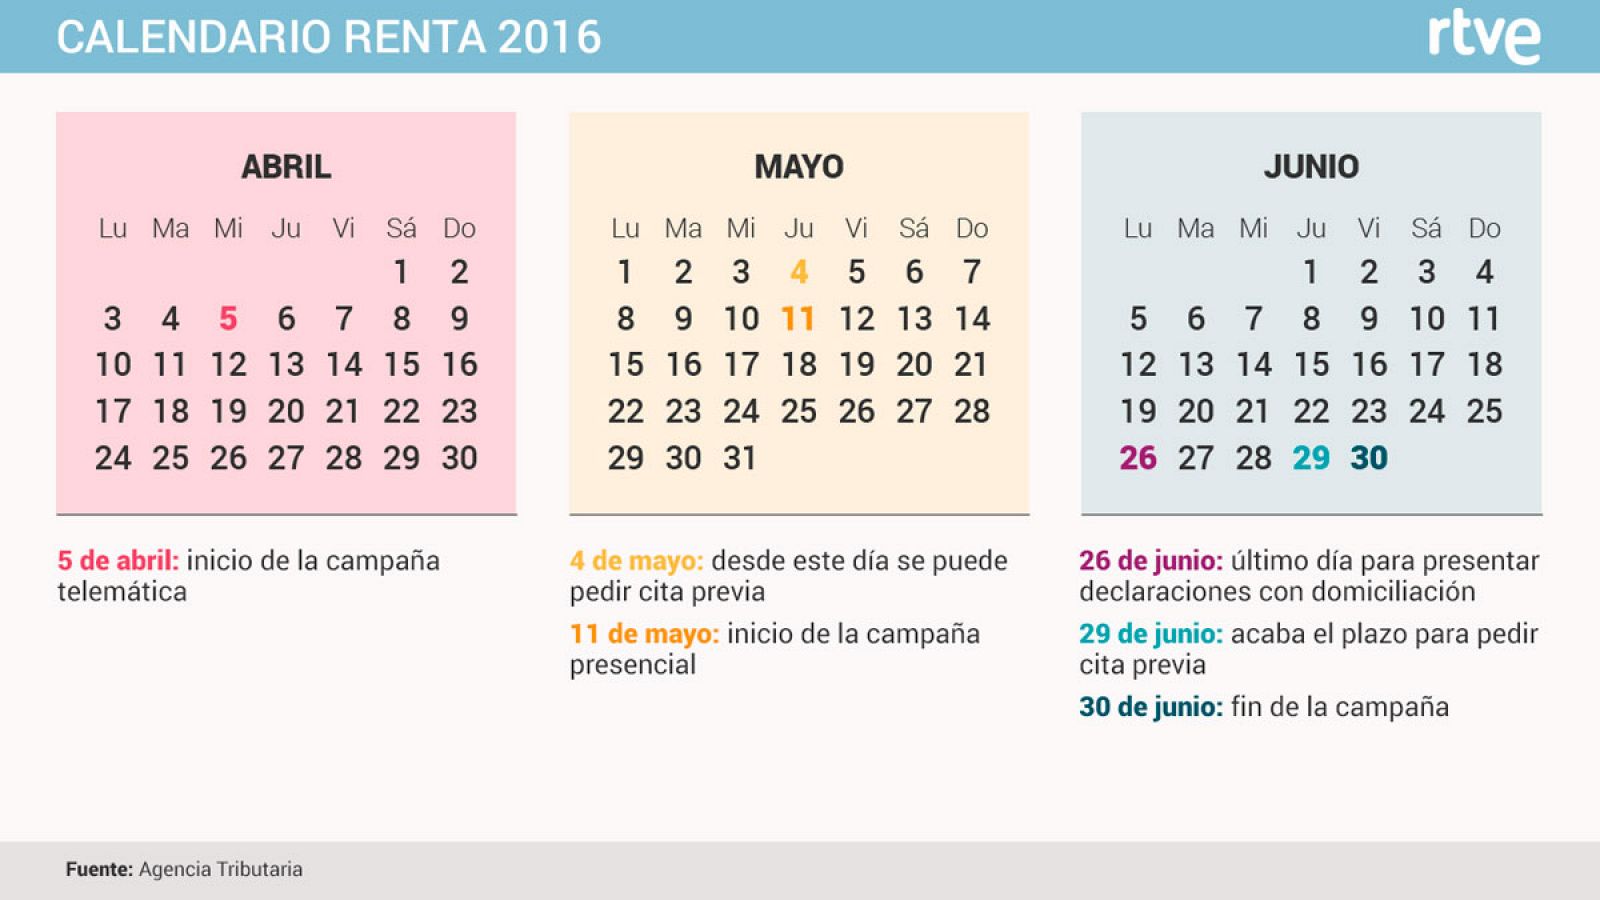 Calendario de la campaña de la Renta 2016